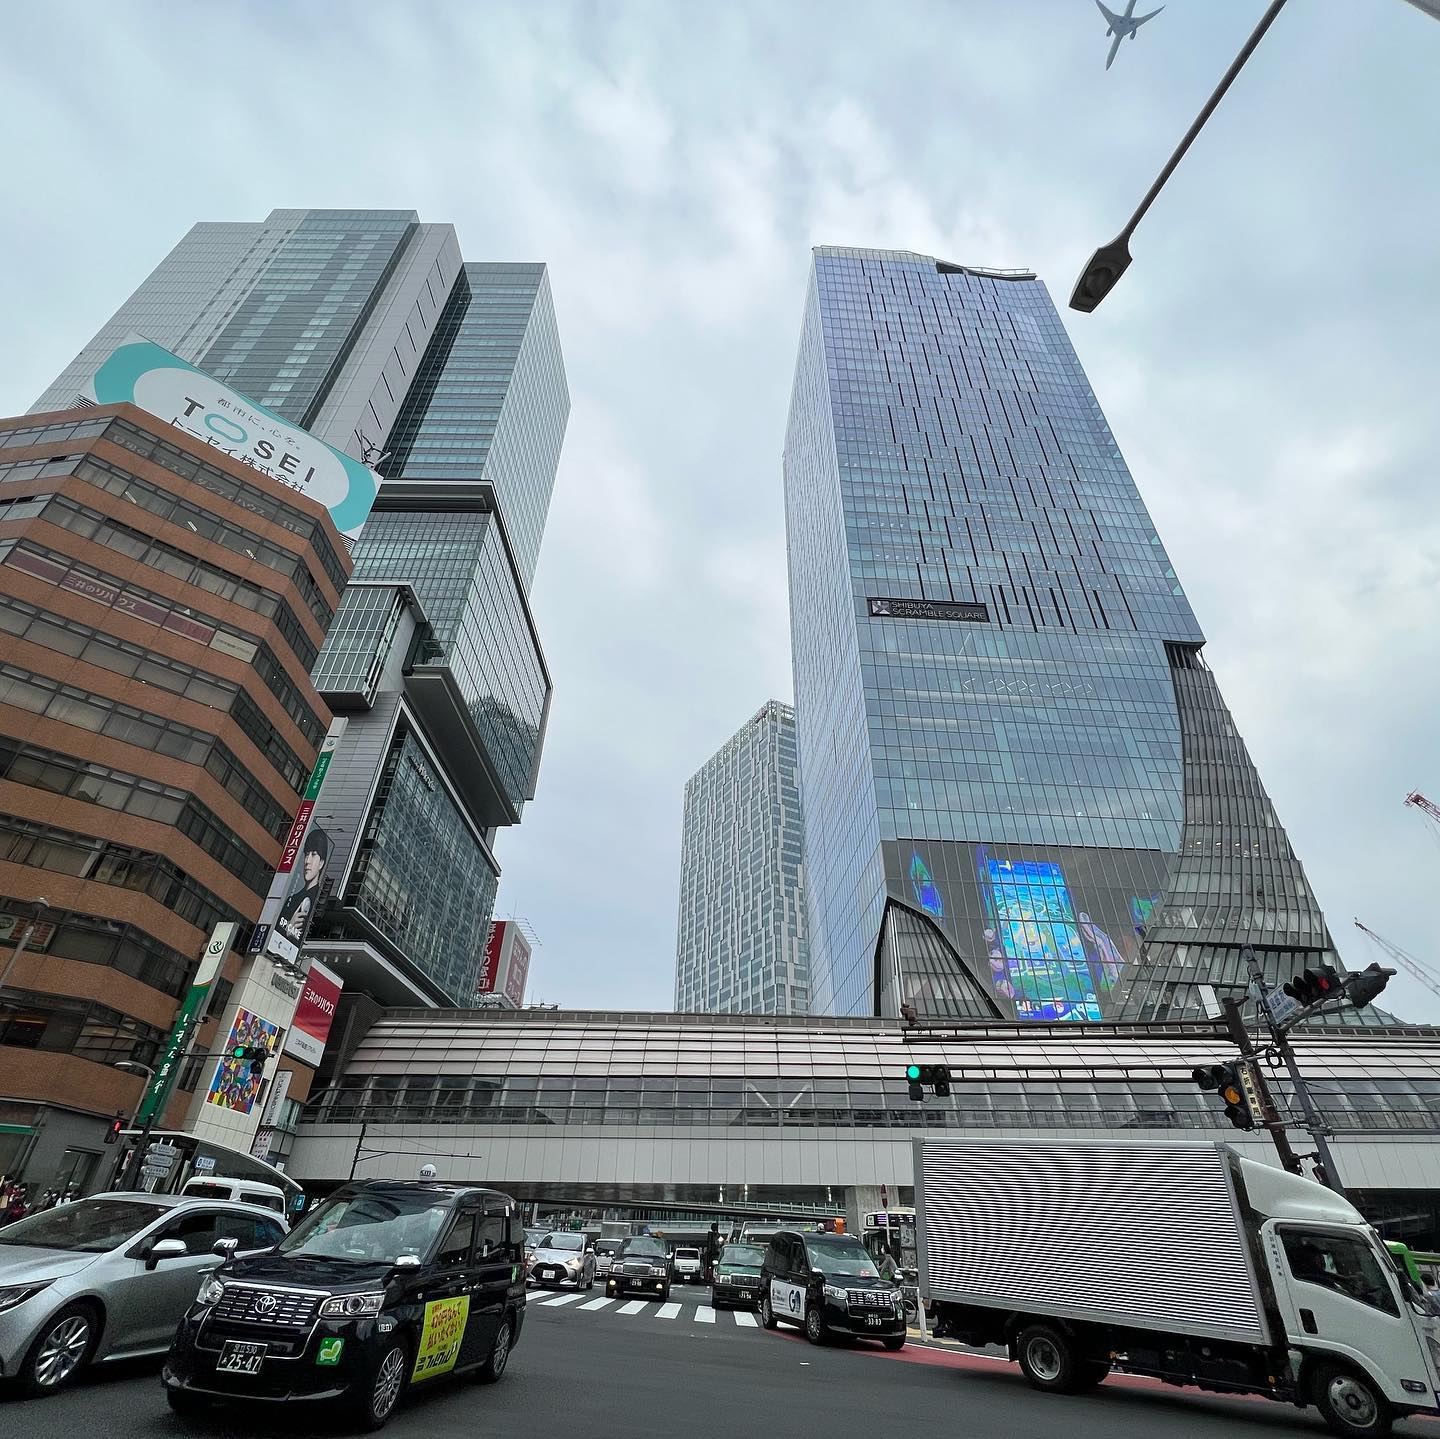 新しい渋谷と、昔のまま(っぽい)渋谷